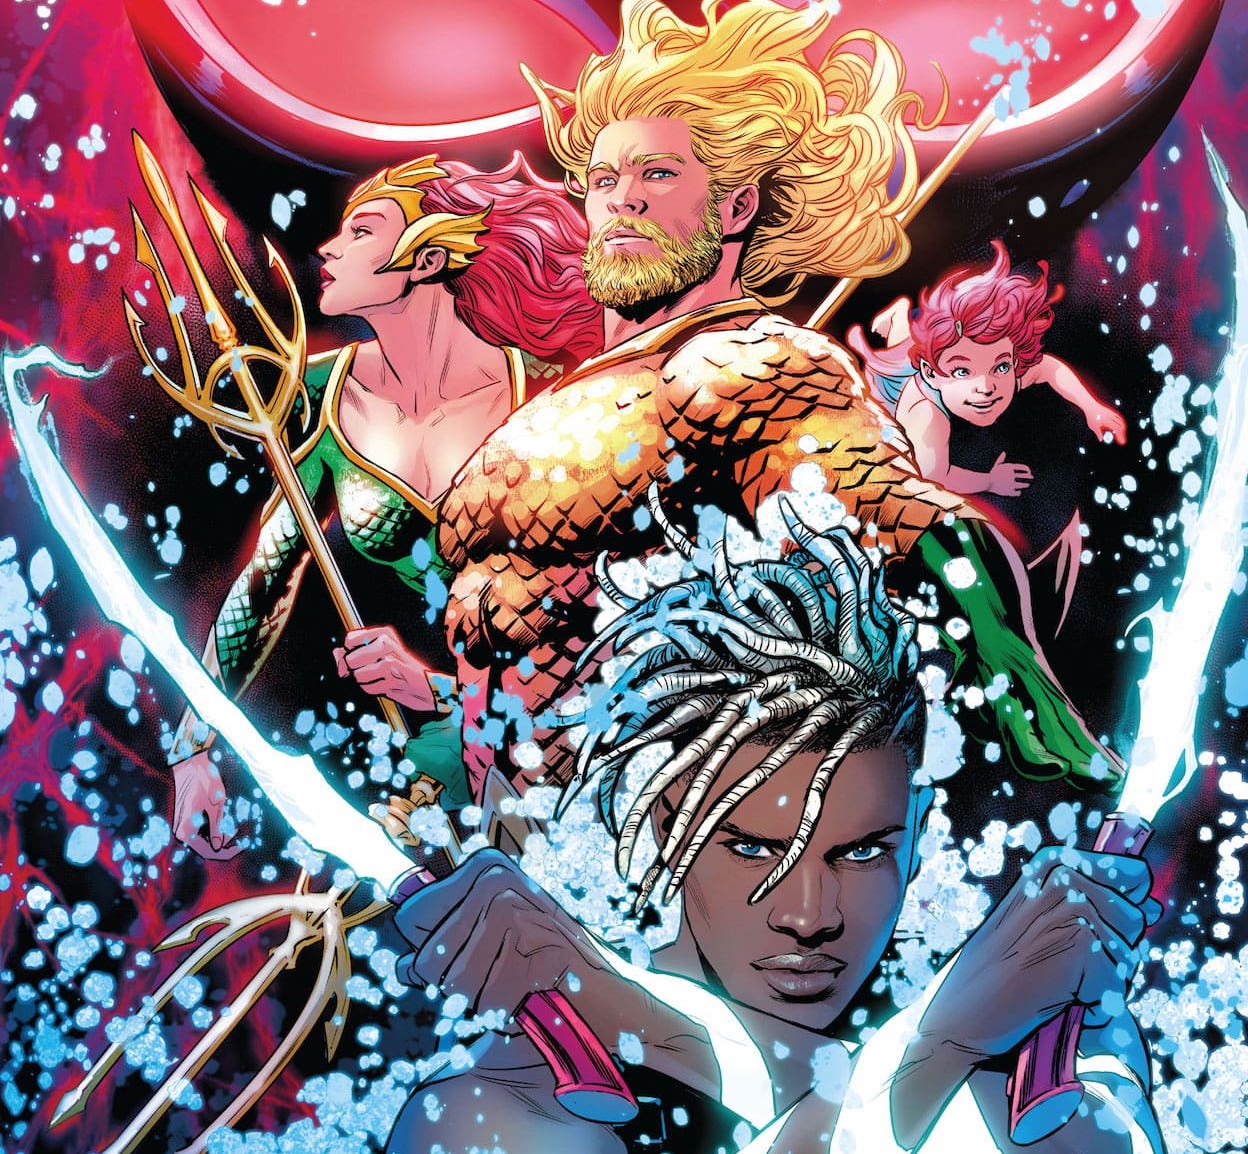 'Aquamen' #1 delivers a triple-A superhero feel